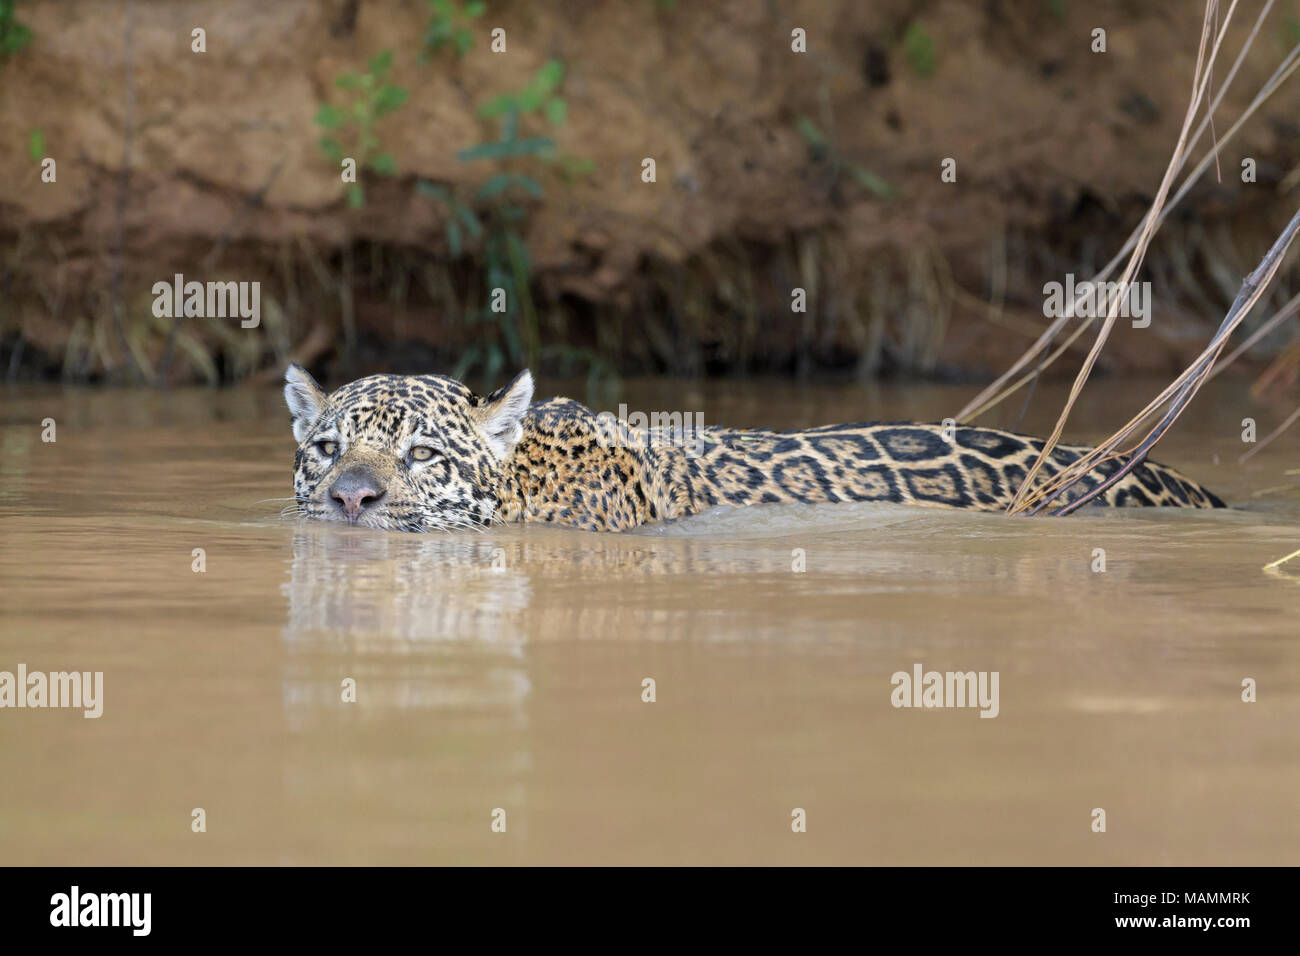 Jaguar (Panthera onca) Nager dans l'eau, looking at camera, Pantanal, Mato Grosso, Brésil Banque D'Images